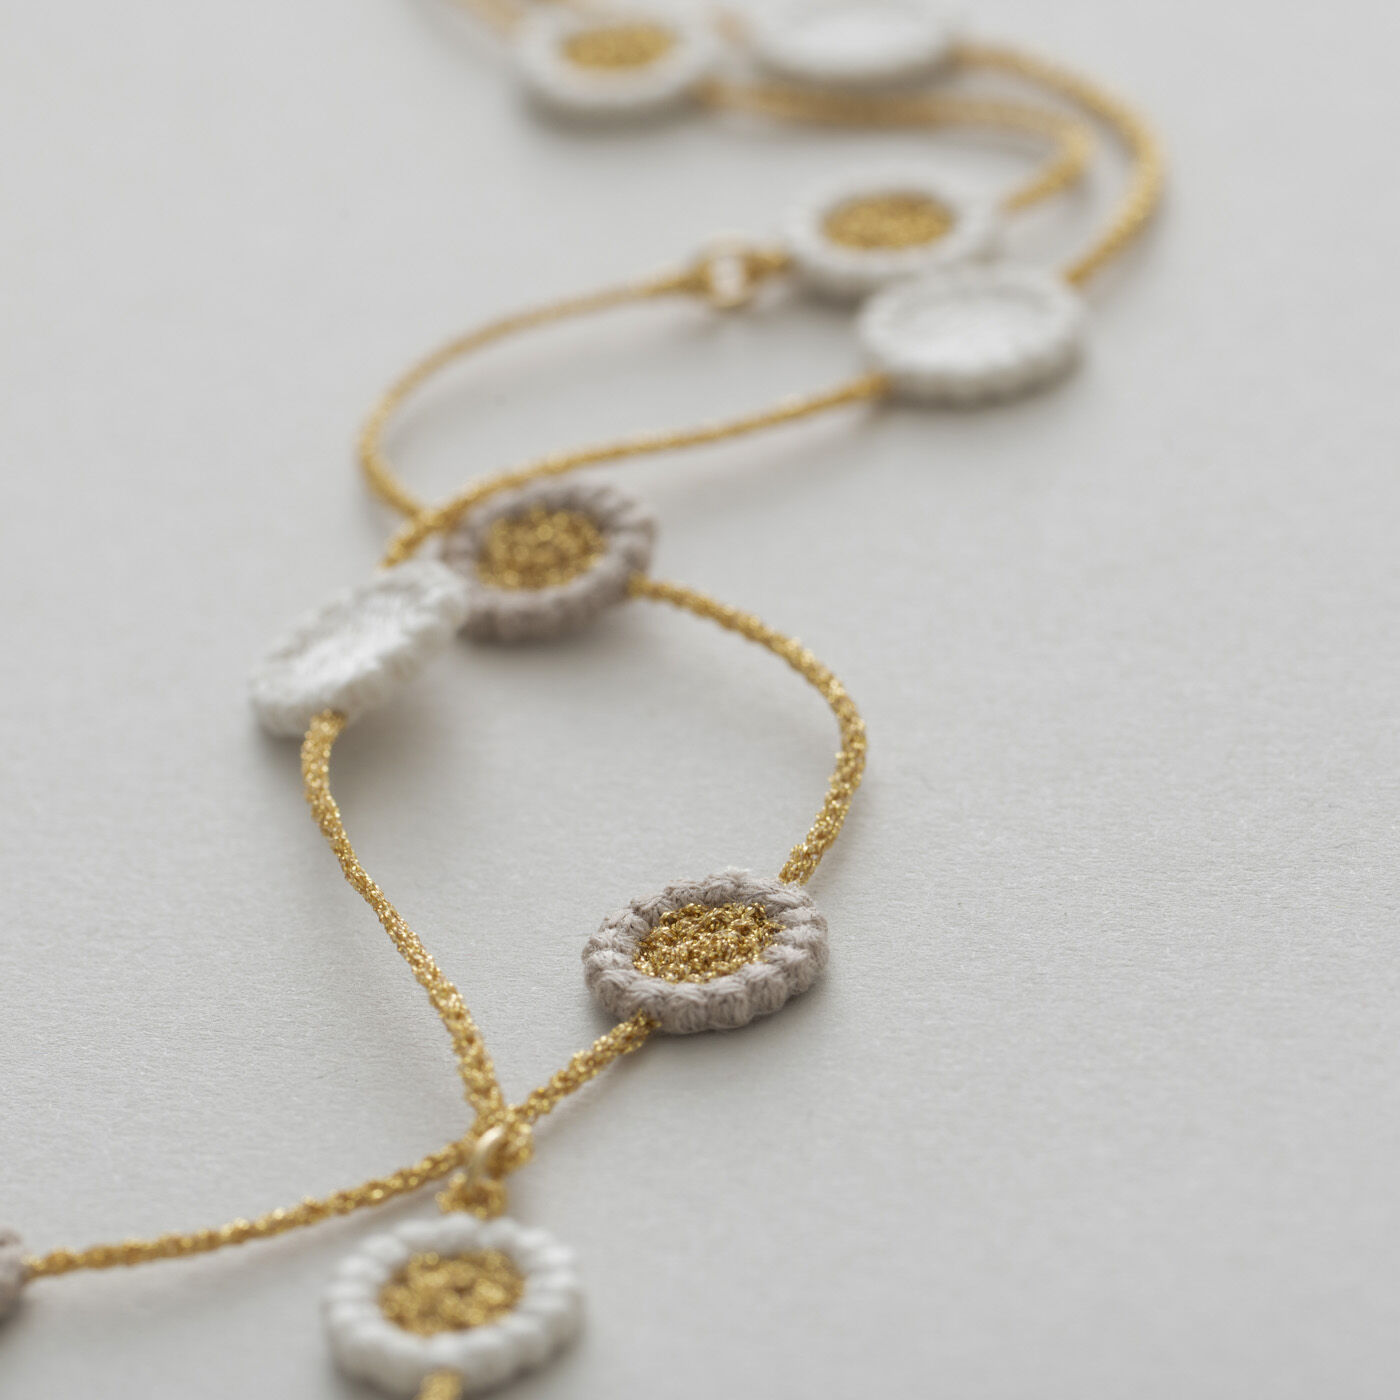 ＆Stories|群馬の刺繍工房が作った　糸の宝石のレースフラワーネックレス〈ゴールド色〉|糸の組み合わせによって表情が異なる3種類の花がリズムよく連なり、シンプルながら洗練された雰囲気を醸します。